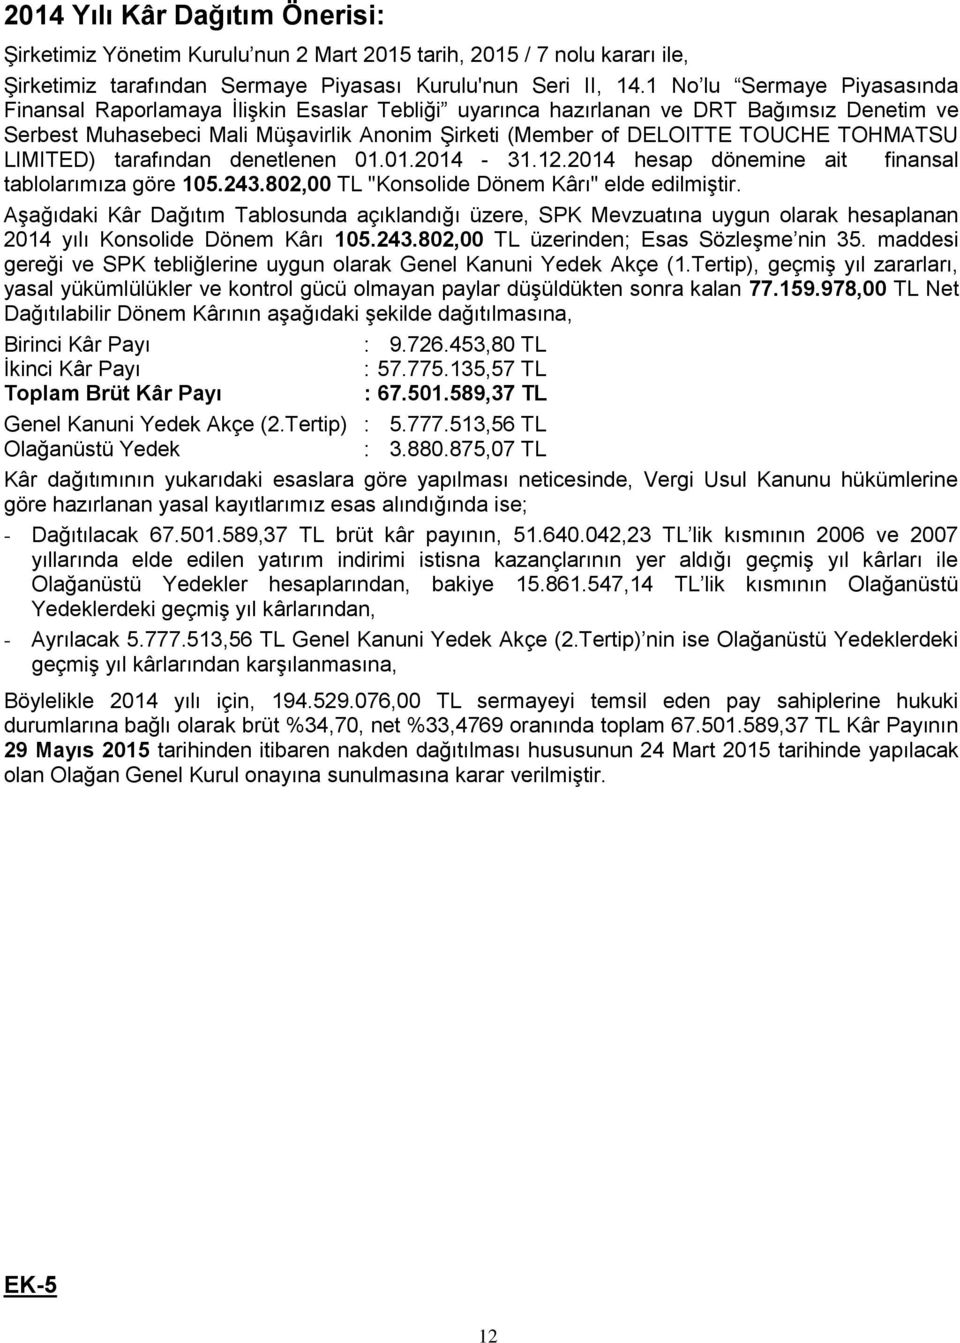 TOHMATSU LIMITED) tarafından denetlenen 01.01.2014-31.12.2014 hesap dönemine ait finansal tablolarımıza göre 105.243.802,00 TL "Konsolide Dönem Kârı" elde edilmiştir.